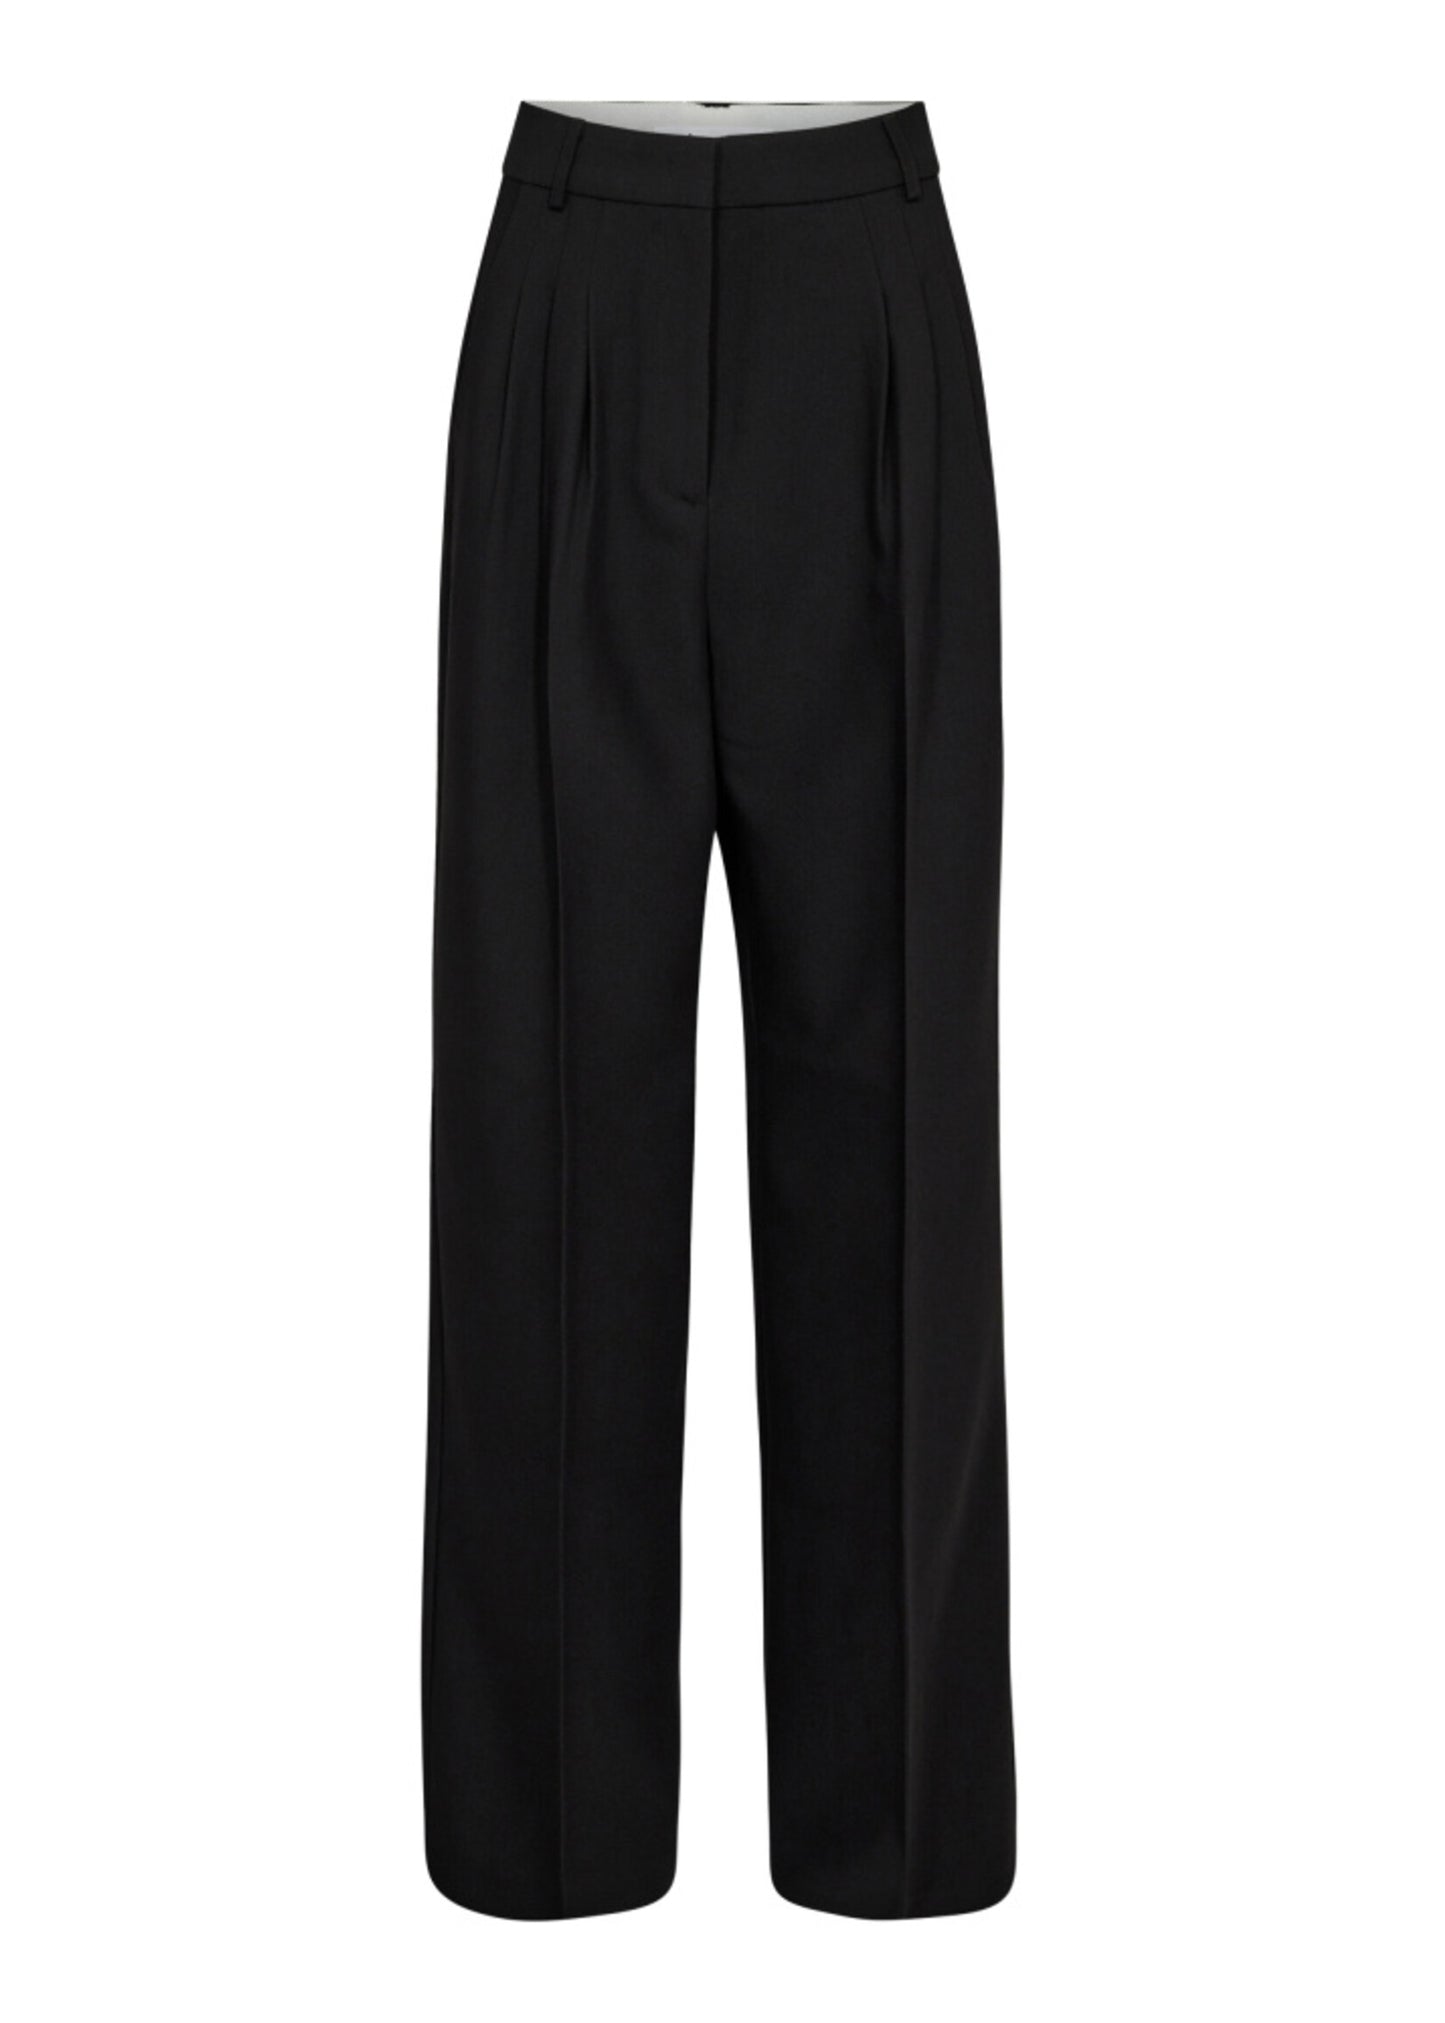 Co'Couture | VolaCC Long Pleat Pant - Black